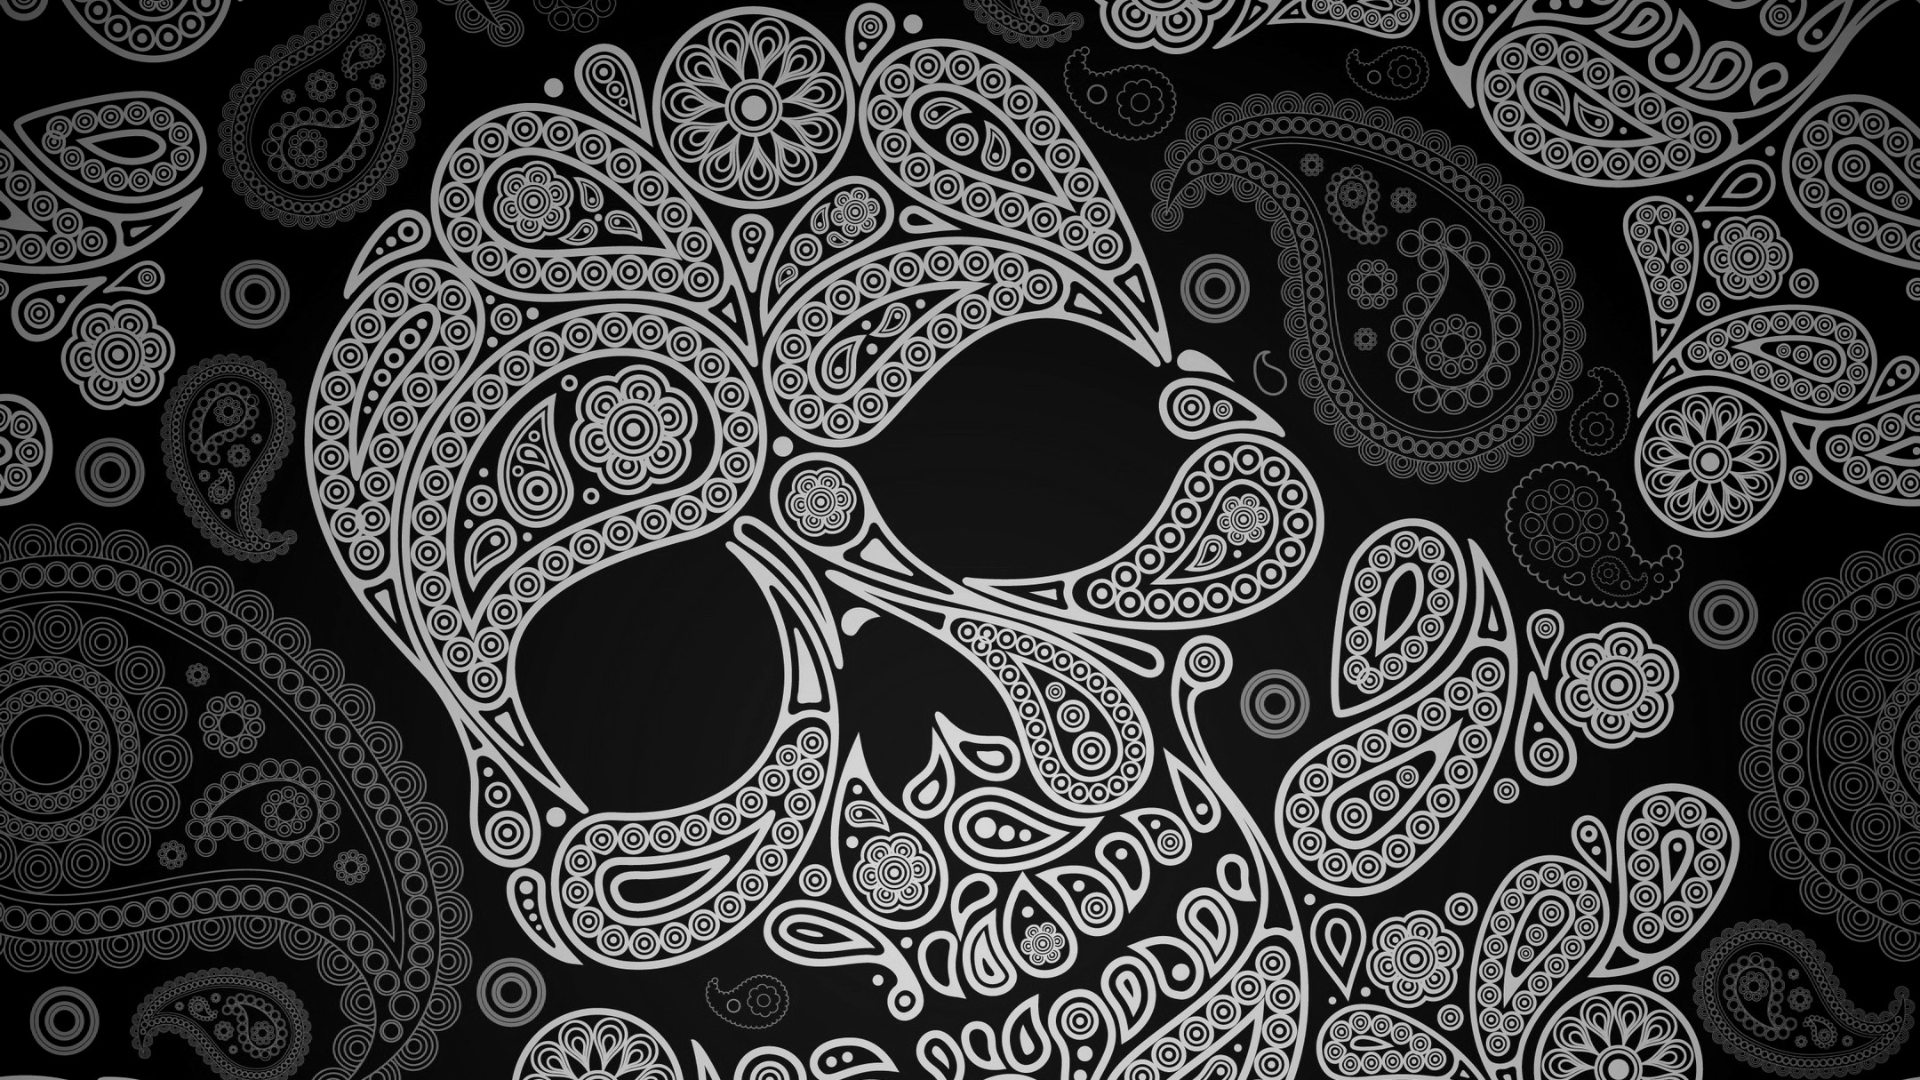 [46+] Mexican Skull Wallpaper on WallpaperSafari 3d Skull Wallpaper Hd